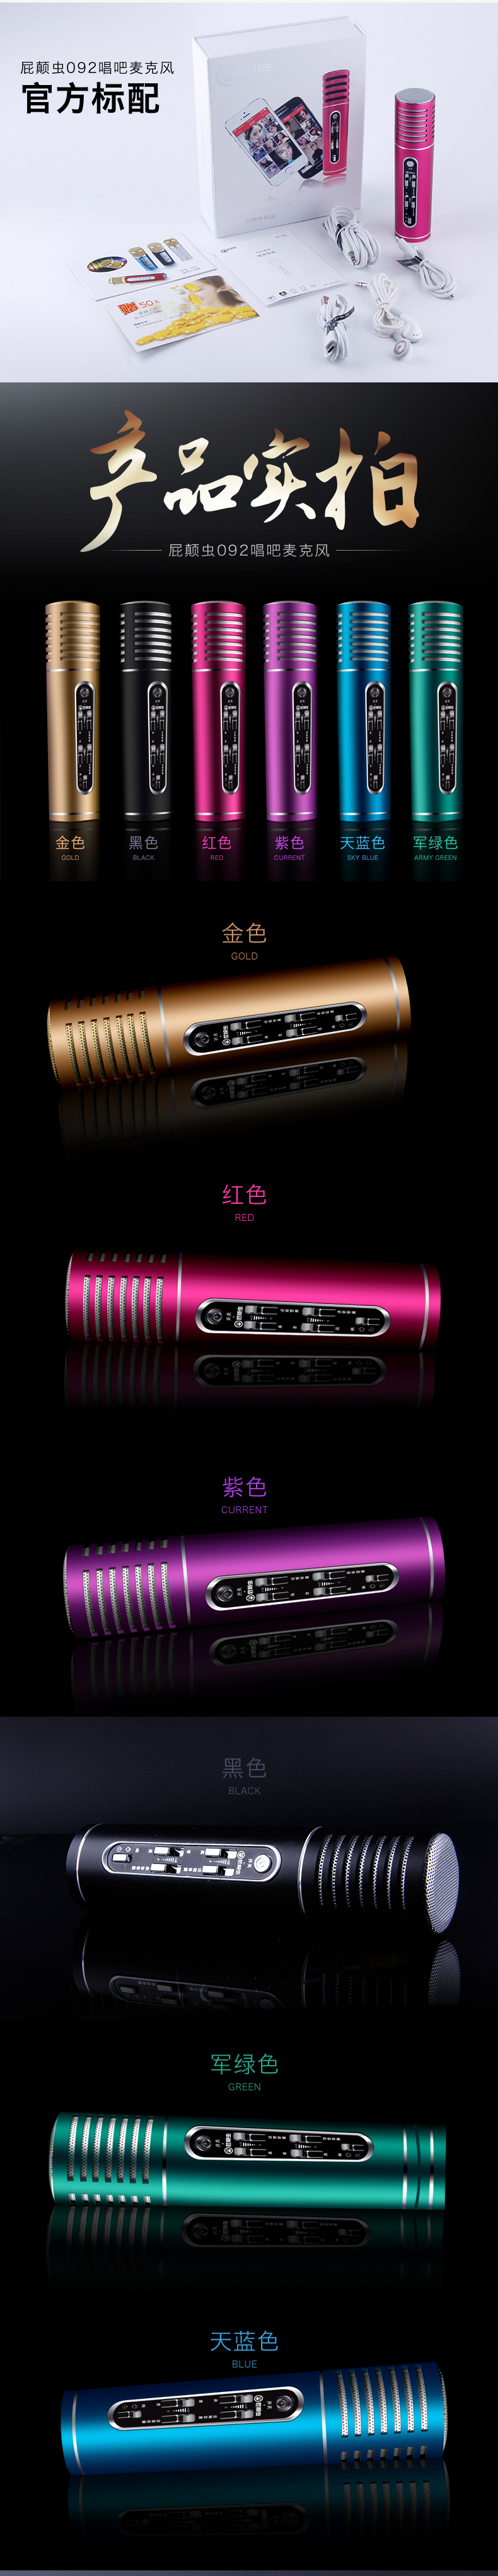 屁颠虫092手机麦克风电脑k歌专用话筒 电容麦克风 主播USB直播录音设备套装 紫色